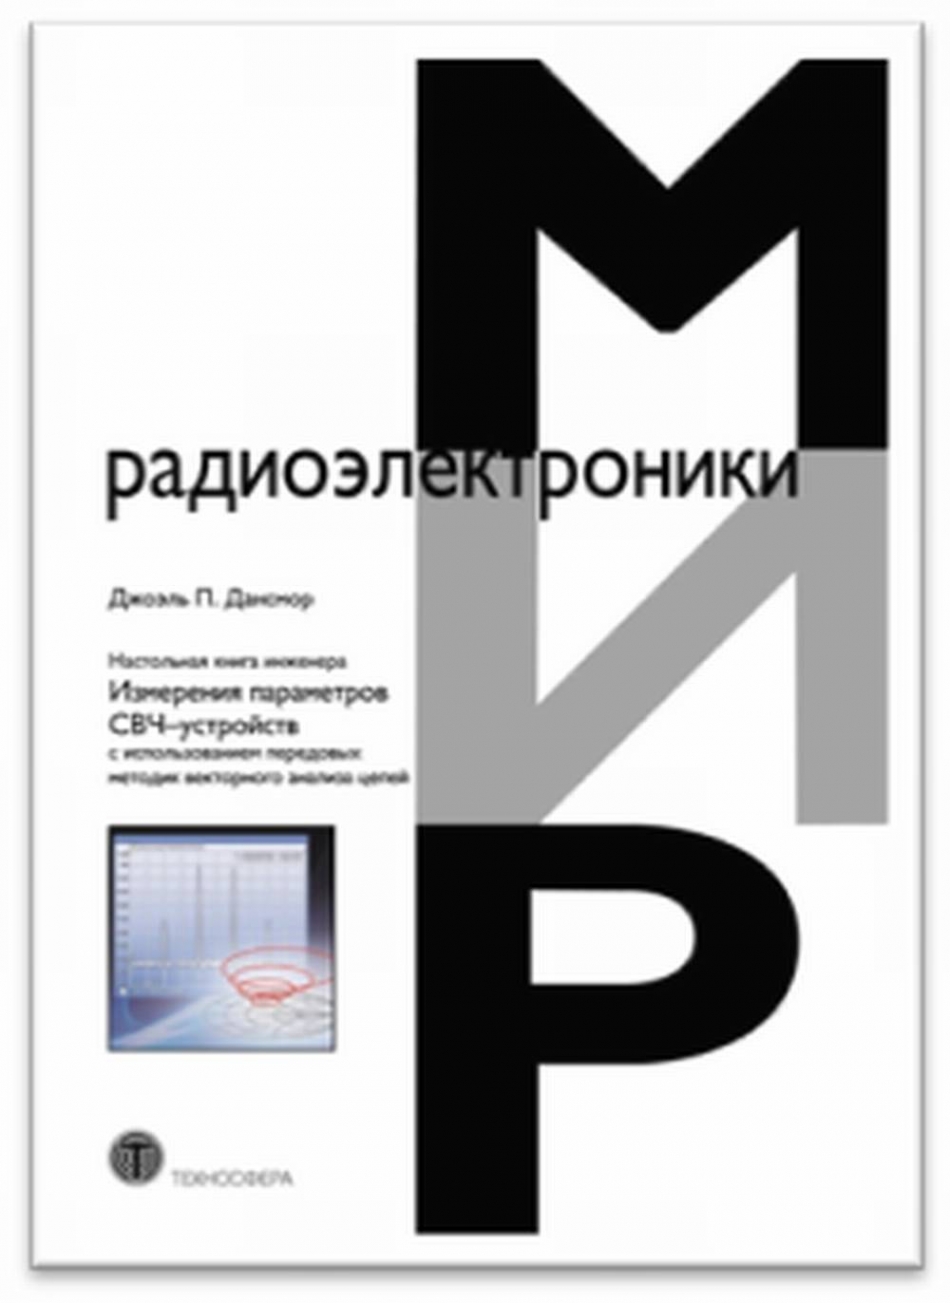 Дансмор Дж.П. Настольная книга инженера. Измерения параметров СВЧ-устройств с использованием передовых методик векторного анализа цепей 